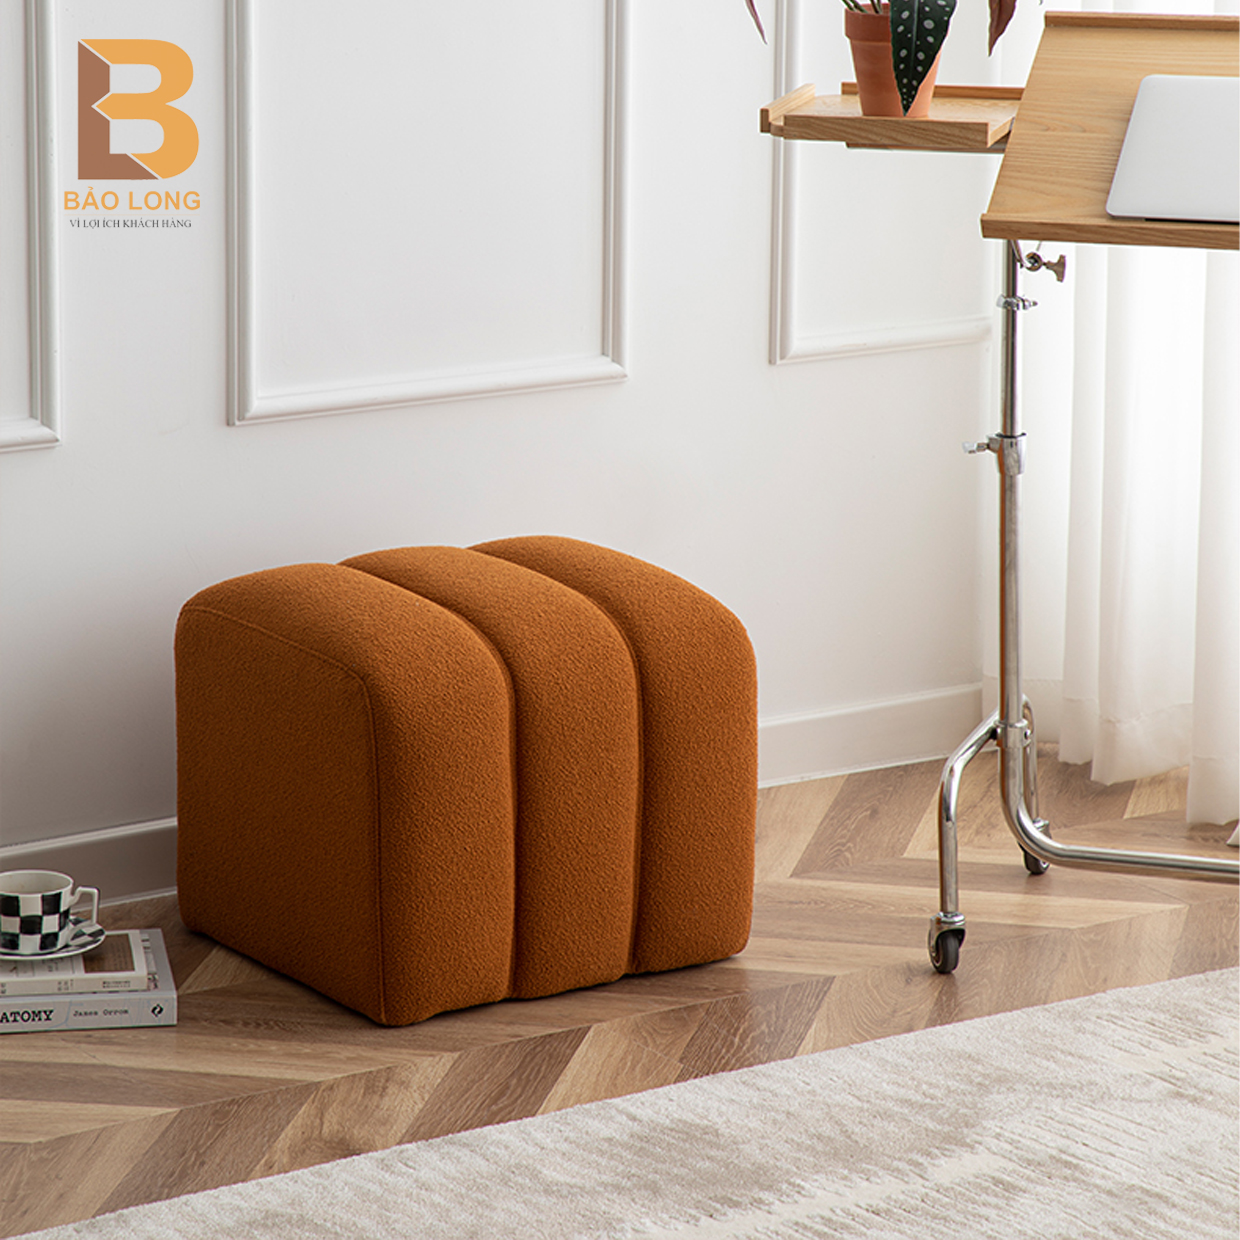 Ghế đôn sofa khung gỗ thông bọc nỉ bông hoặc da Bảo Long dùng làm ghế băng sofa phòng khách, ghế đôn trang điểm cực sang trọng